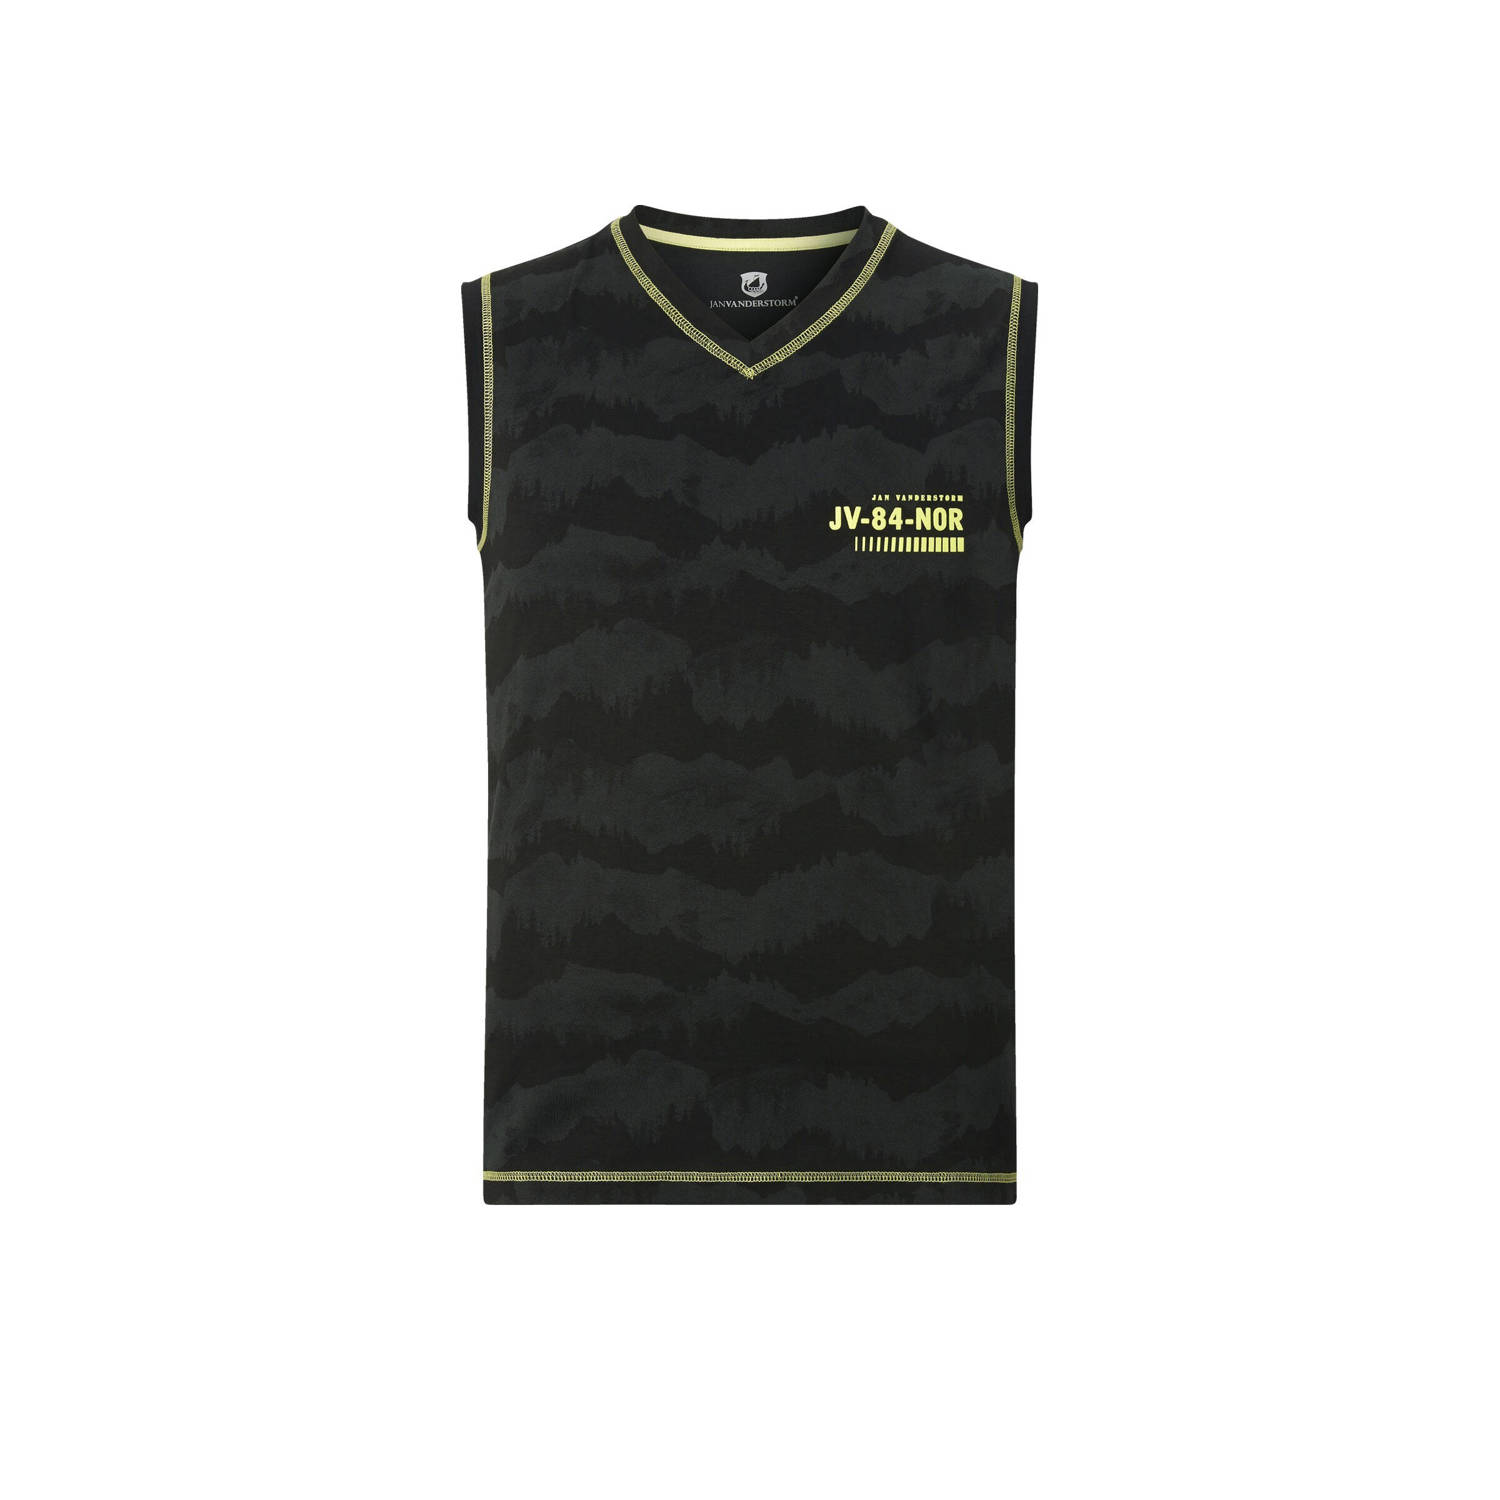 Jan Vanderstorm +FIT Collectie regular fit T-shirt FAFNER Plus Size met logo zwart